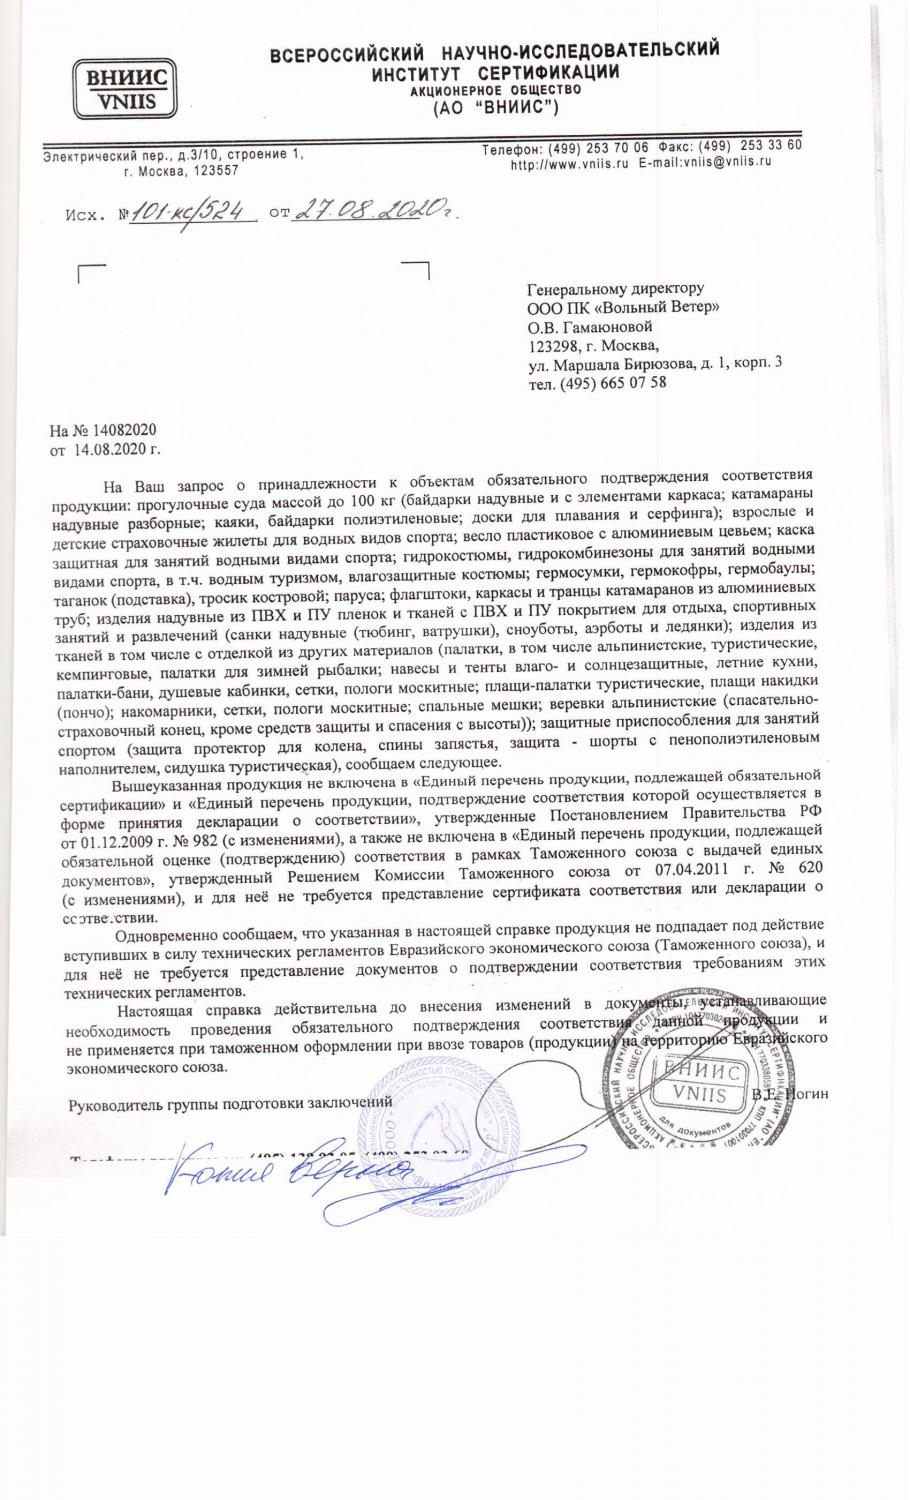 Сертификат на белье или декларация о соответствии - венки-на-заказ.рф